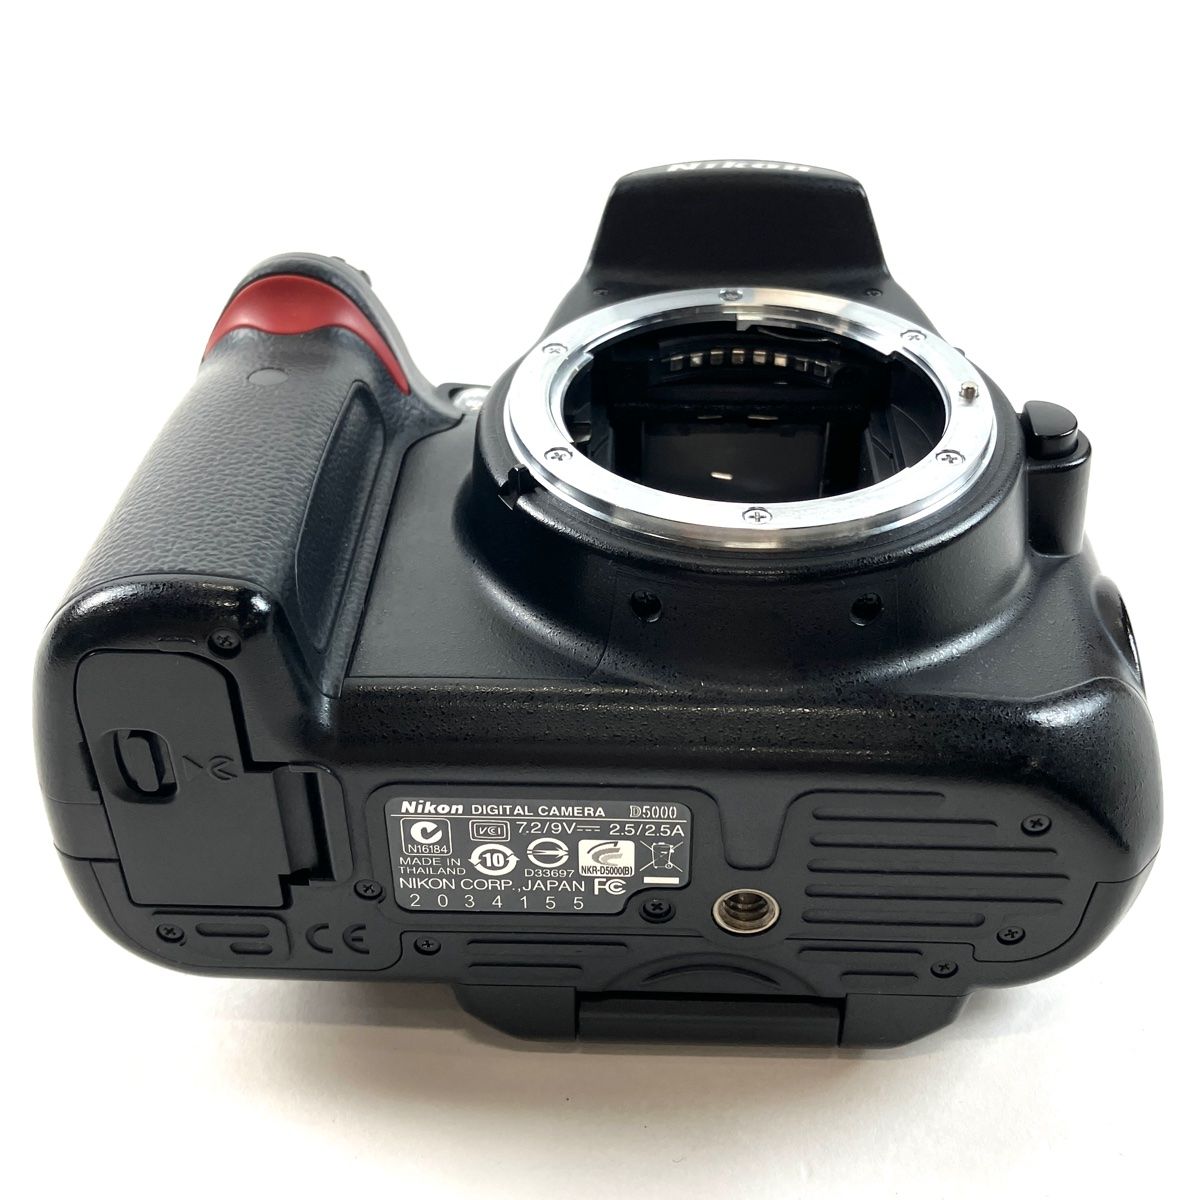 ニコン Nikon D5000 + AF-S DX NIKKOR 16-85mm F3.5-5.6G ED VR